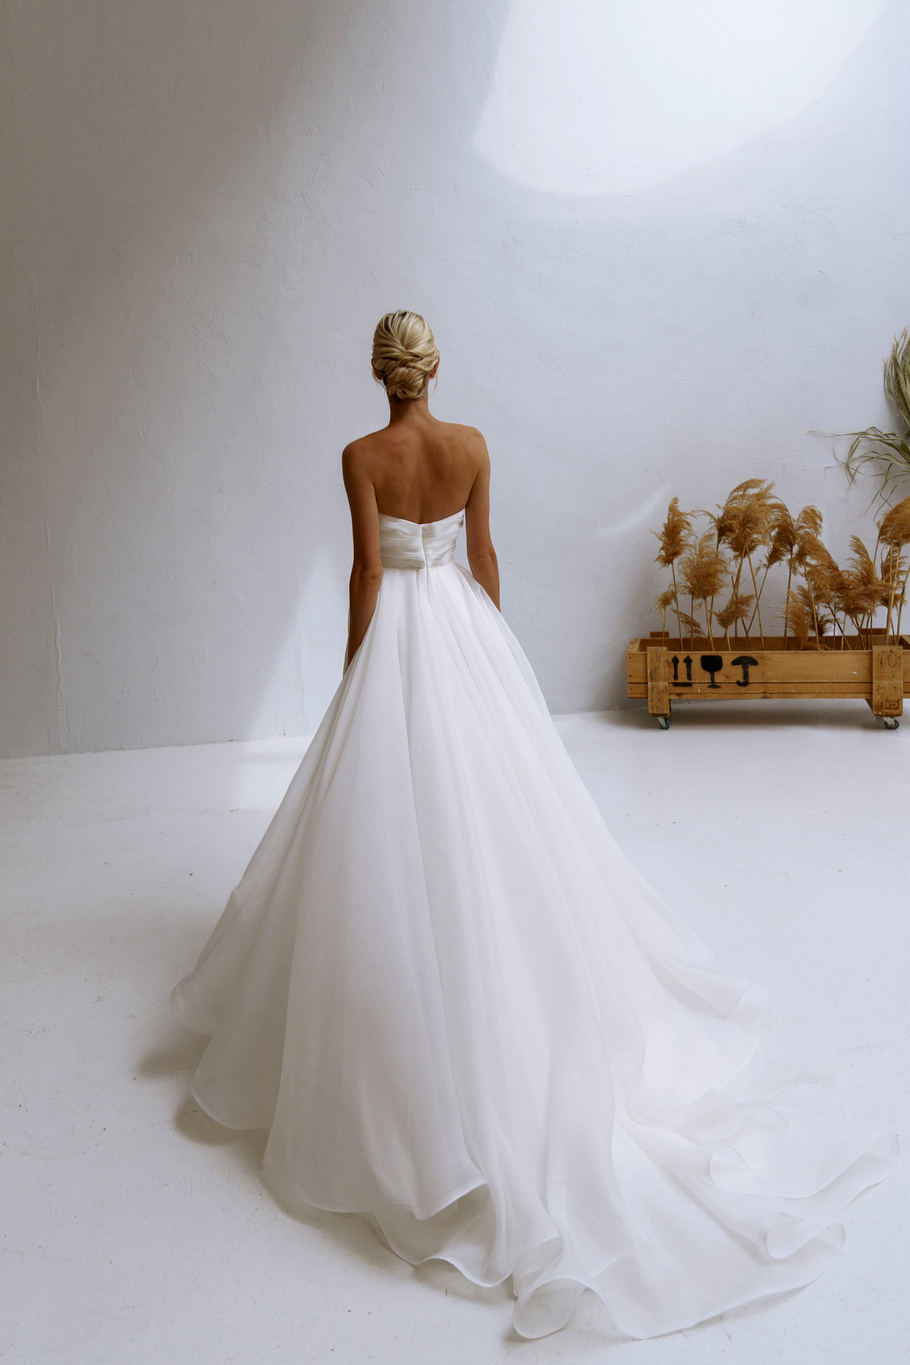 Купить свадебное платье «Лавли» Наталья Романова из коллекции Блаш Бриз 2022 года в салоне «Мэри Трюфель»